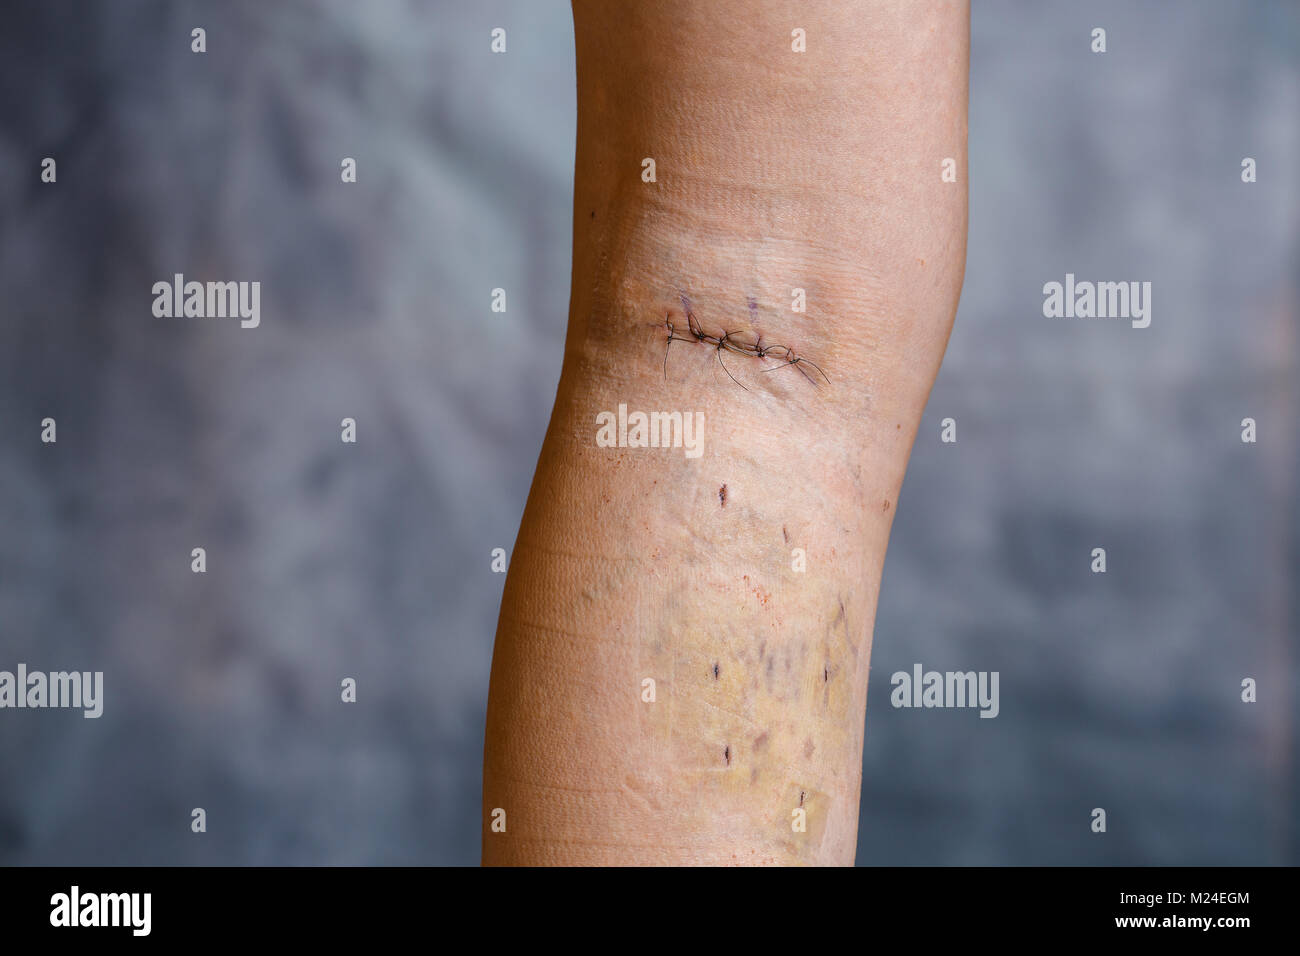 La jambe de womans après chirurgie des varices visibles, avec des sutures chirurgicales (suture) et les blessures sur sa jambe. Le traitement curatif, procédures esthétiques, thro Banque D'Images